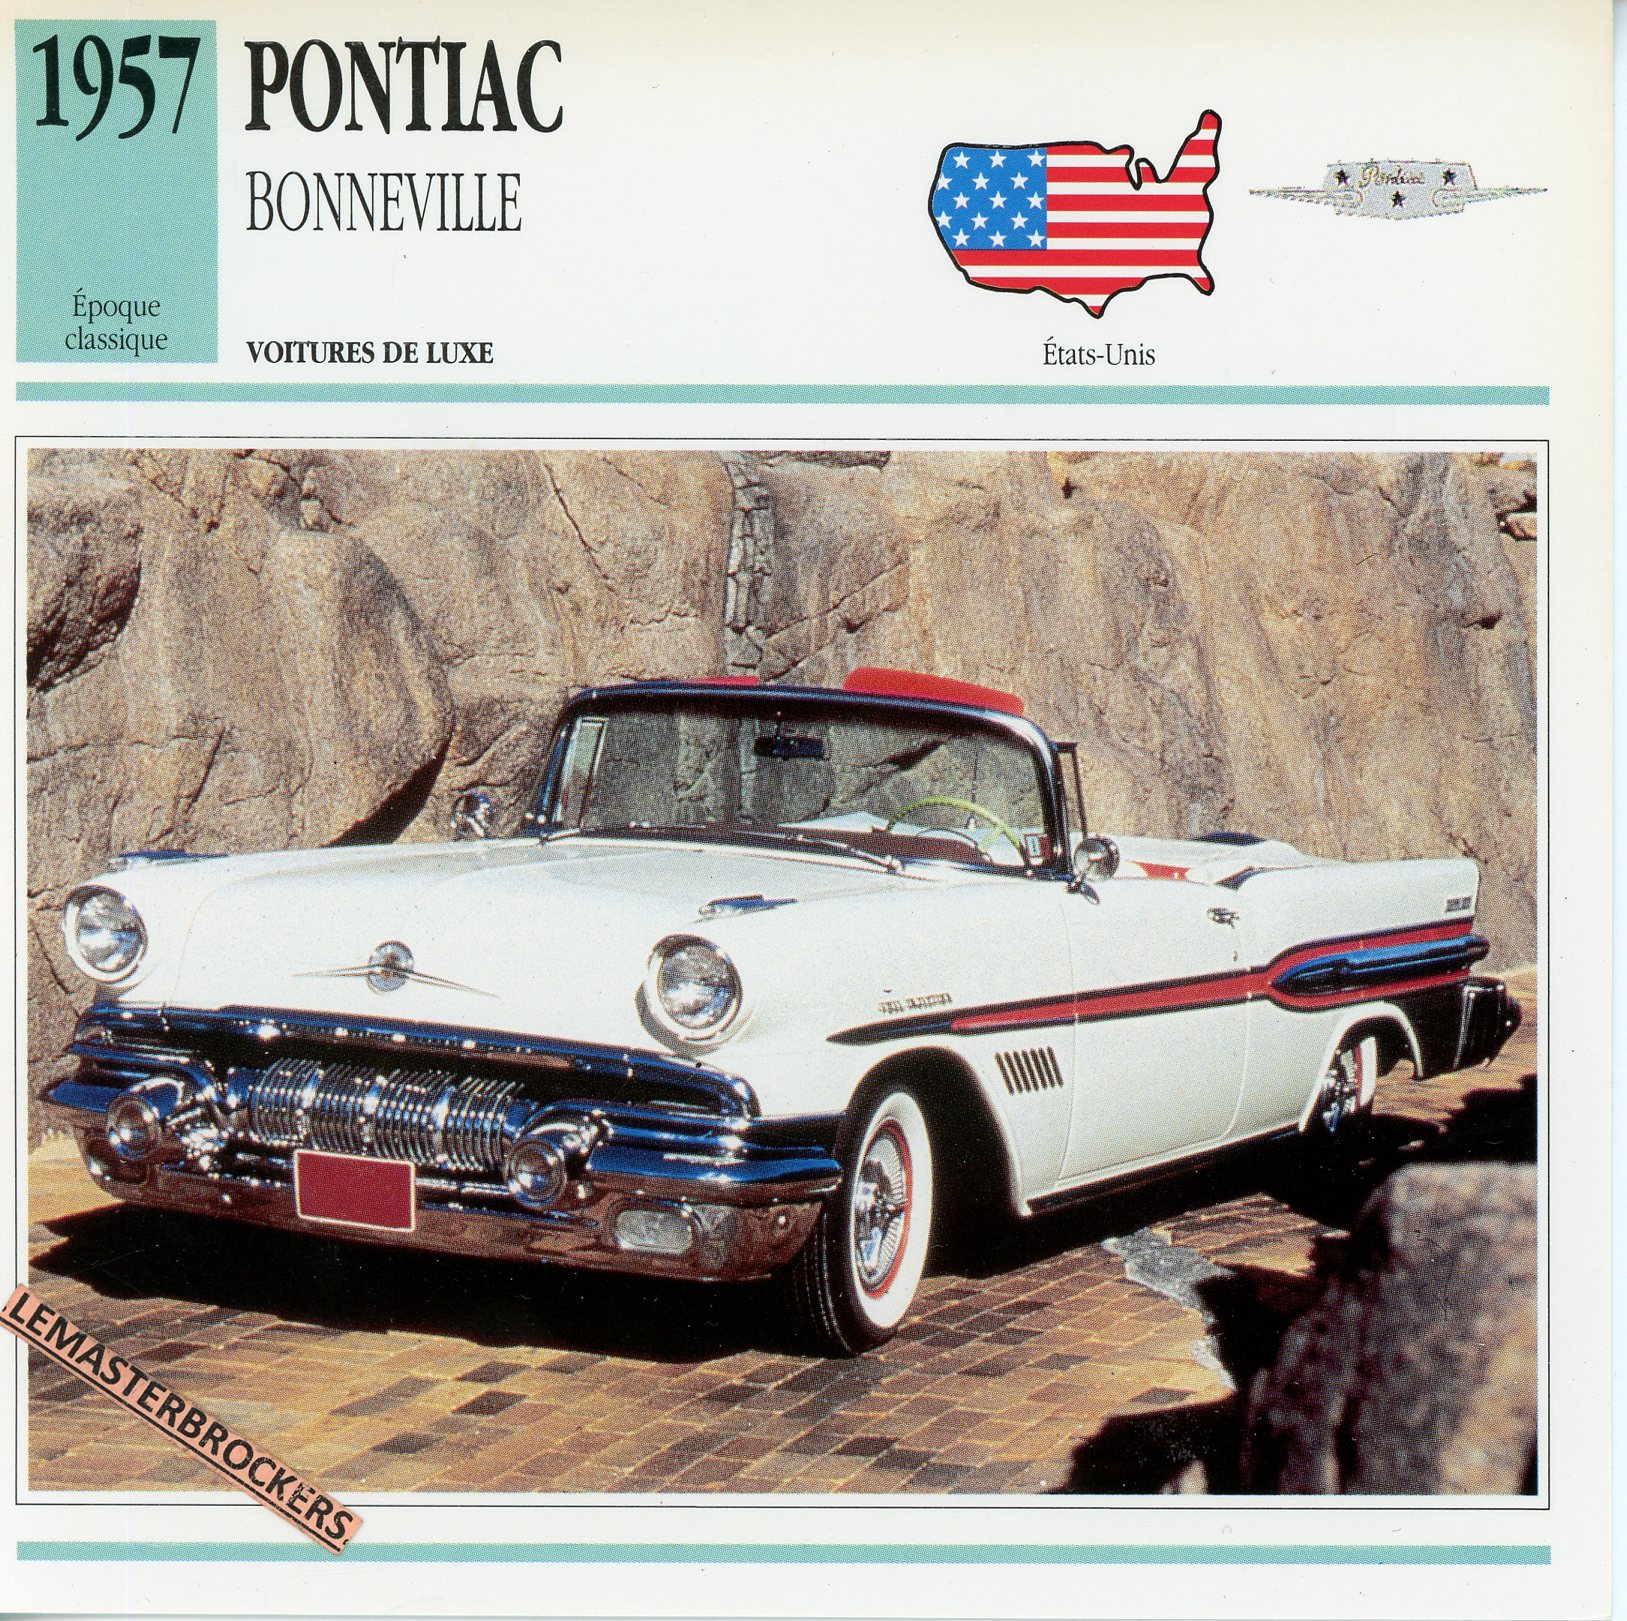 PONTIAC BONNEVILLE 1957 - FICHE AUTO ATLAS ÉDITION